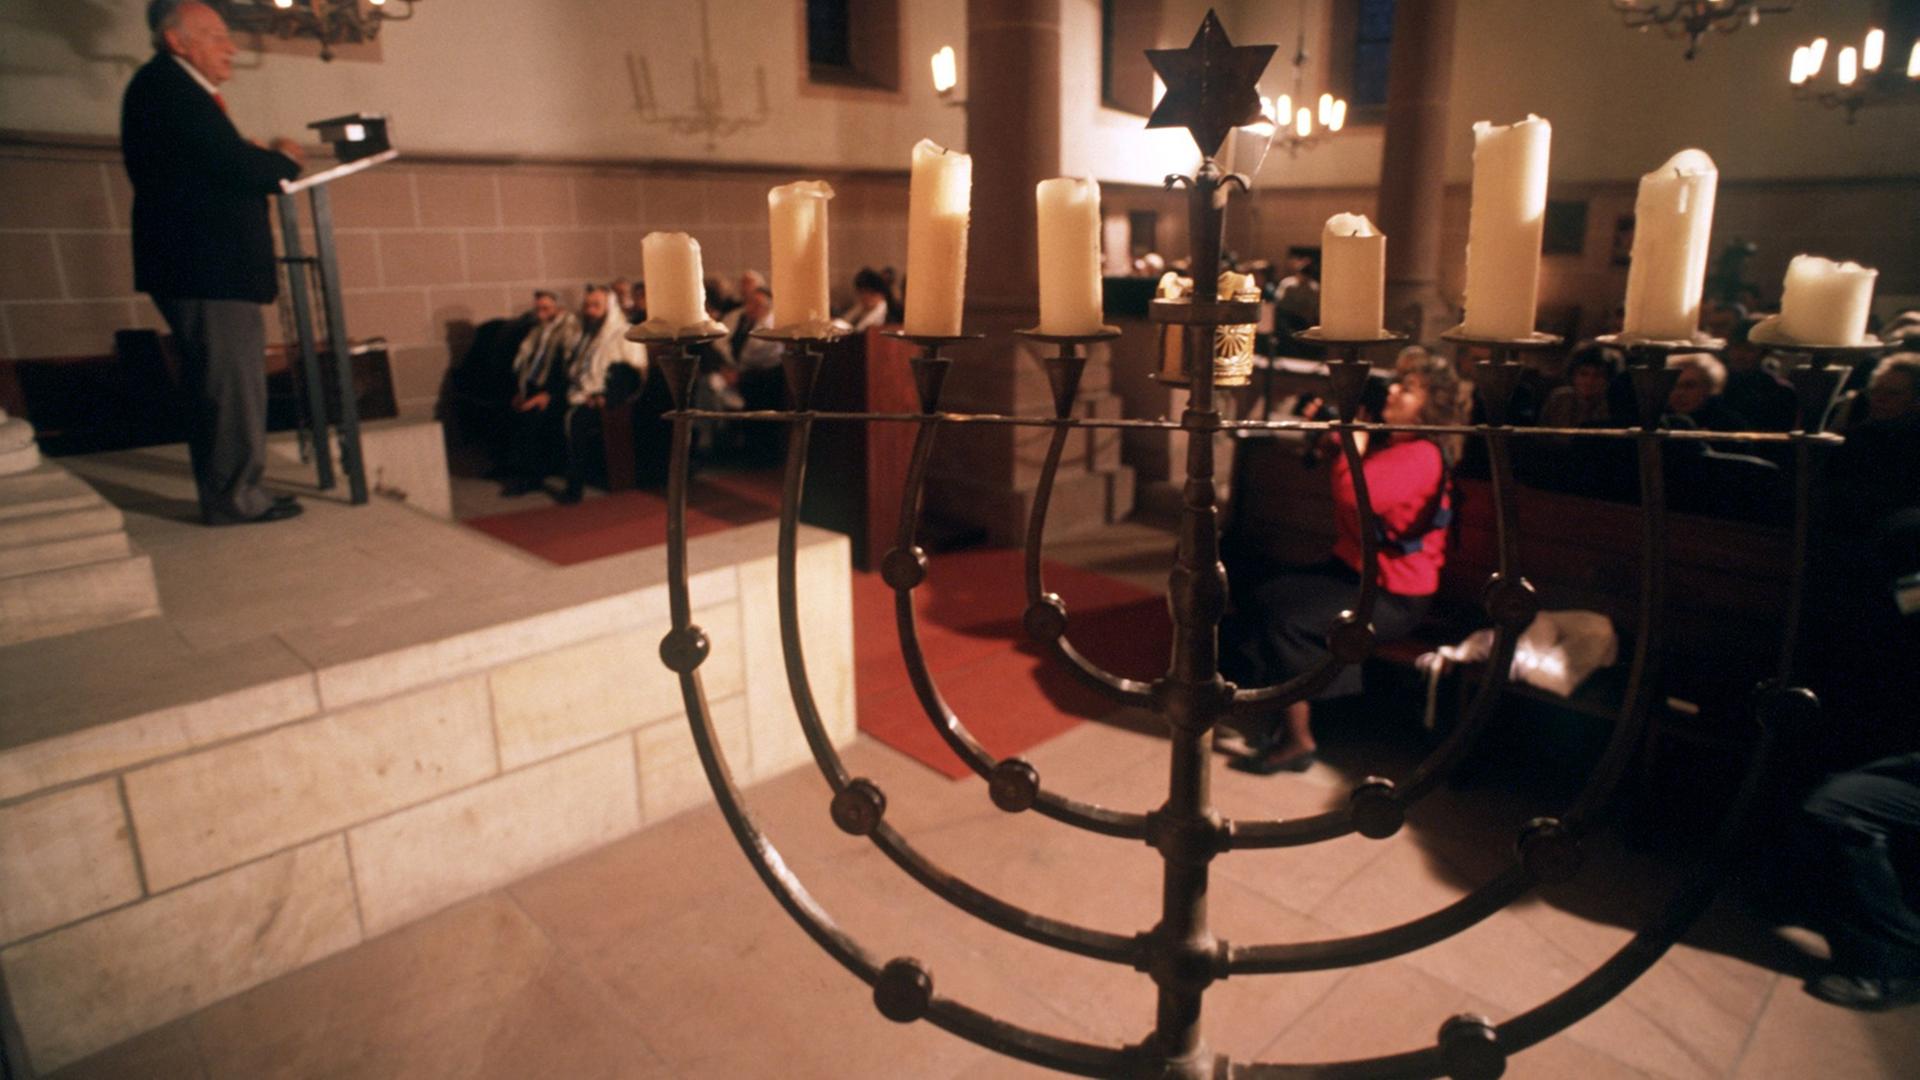 Ein jüdischer Gottesdienst in der Synagoge in Worms mit einem neunarmigen Leuchter im Vordergrund.